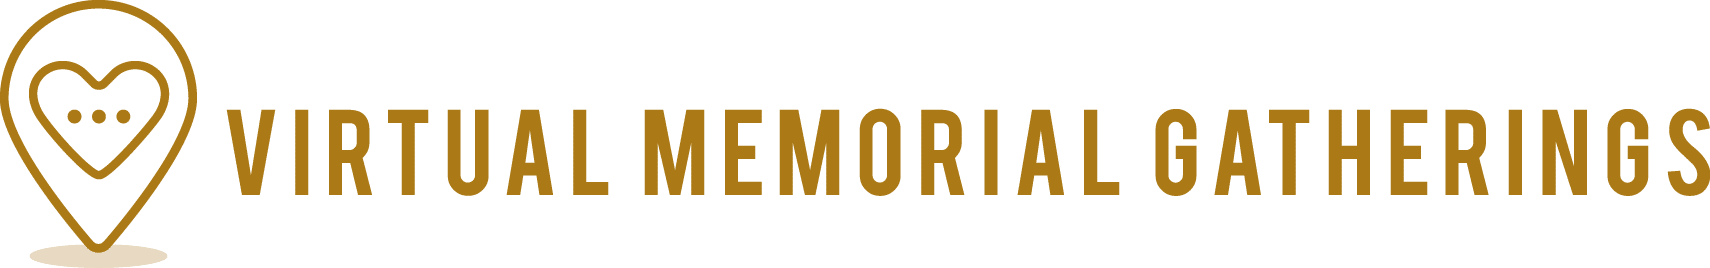 Virtual Funerals & Memorials